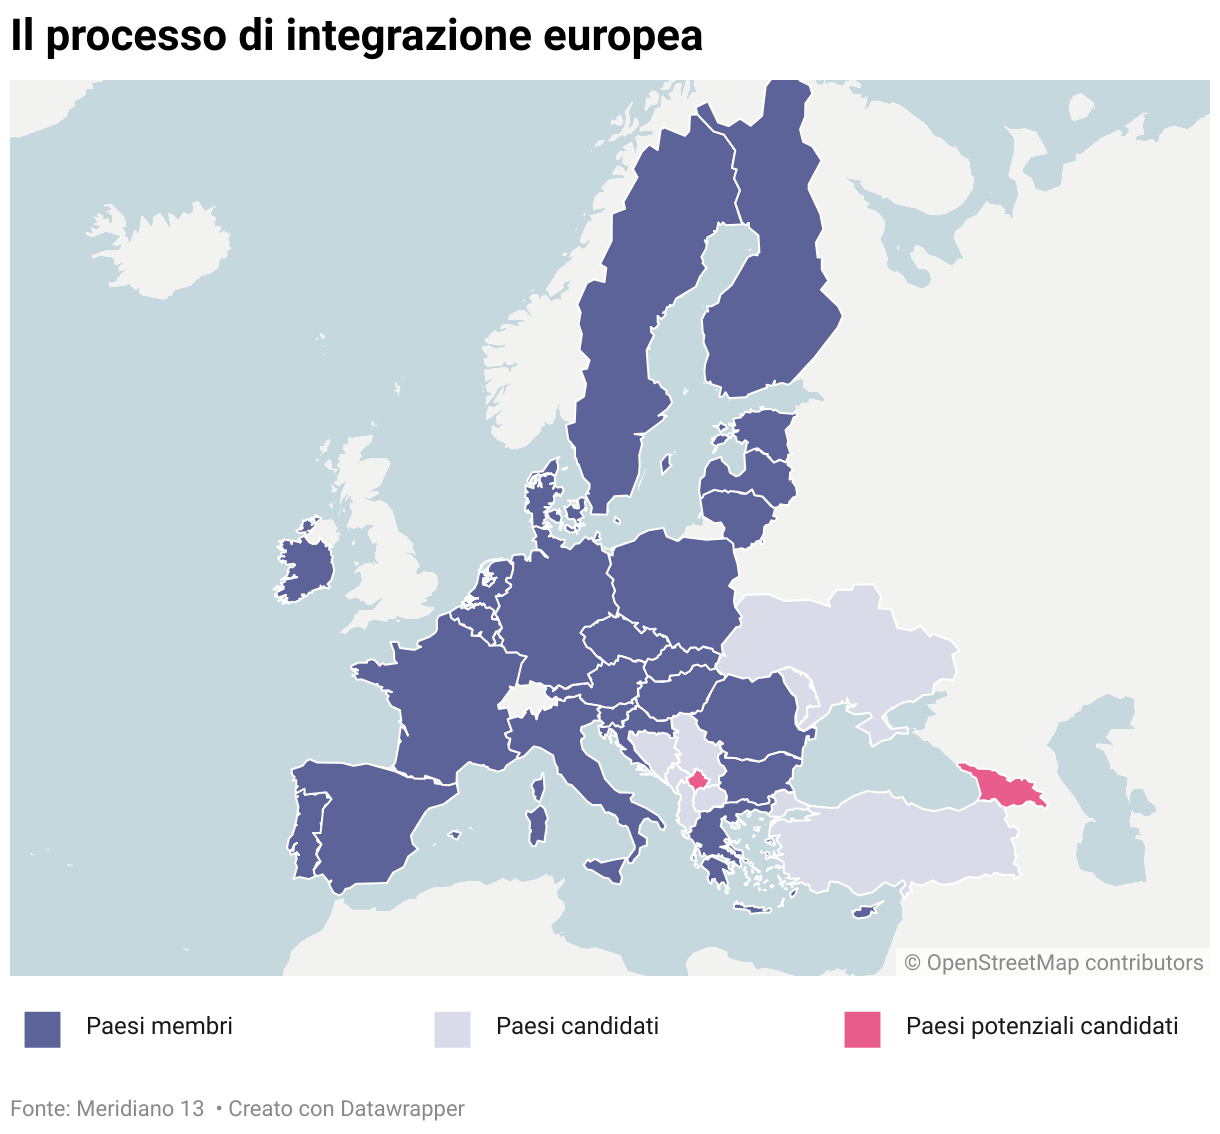 Una mappa dei paesi membri dell'Unione europea, dei paesi candidati e dei potenziali candidati all'integrazione europea.